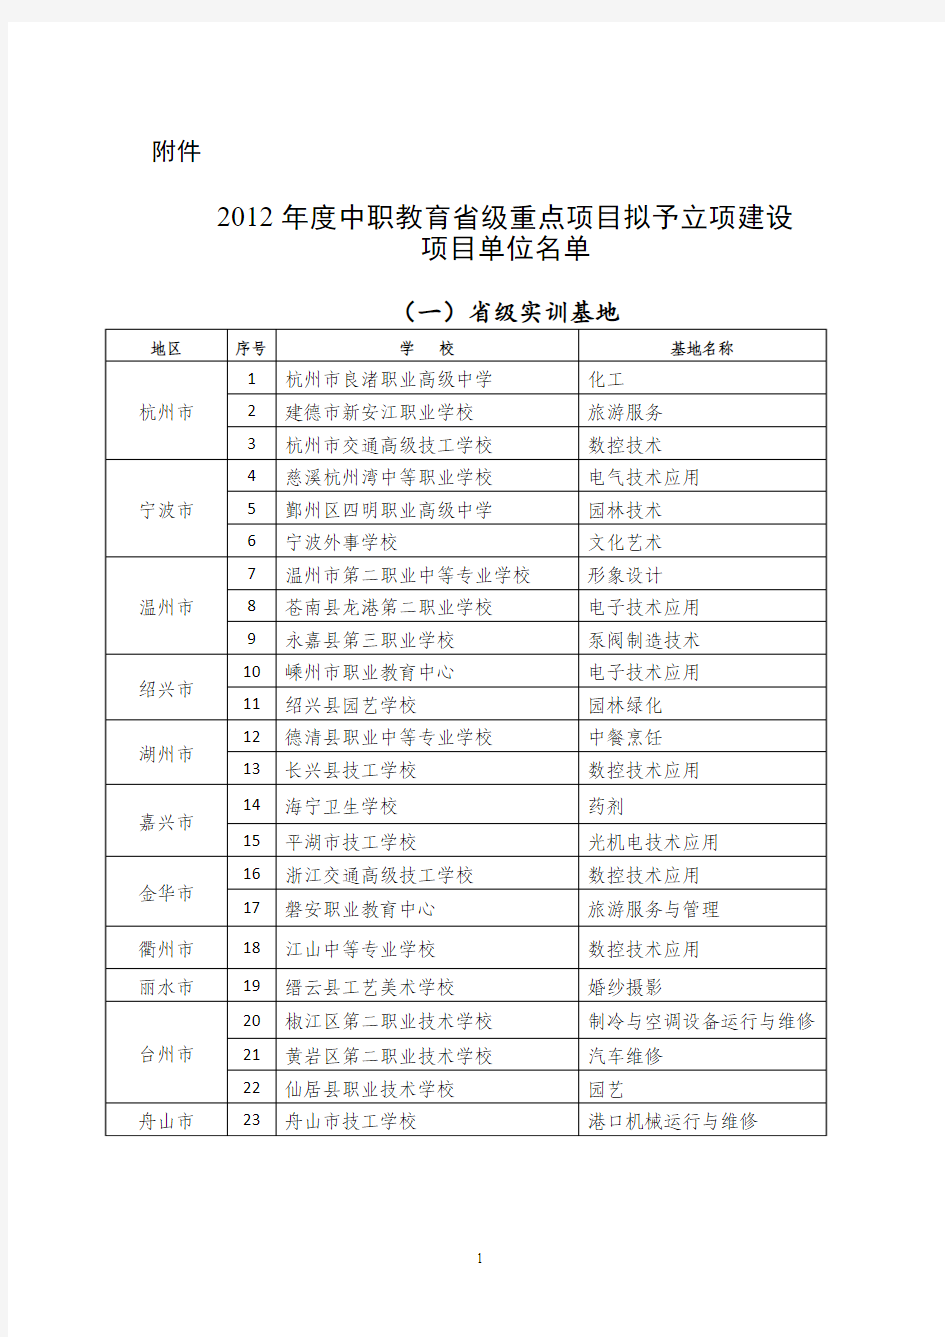 浙江省中职学校首批建设项目公示名单